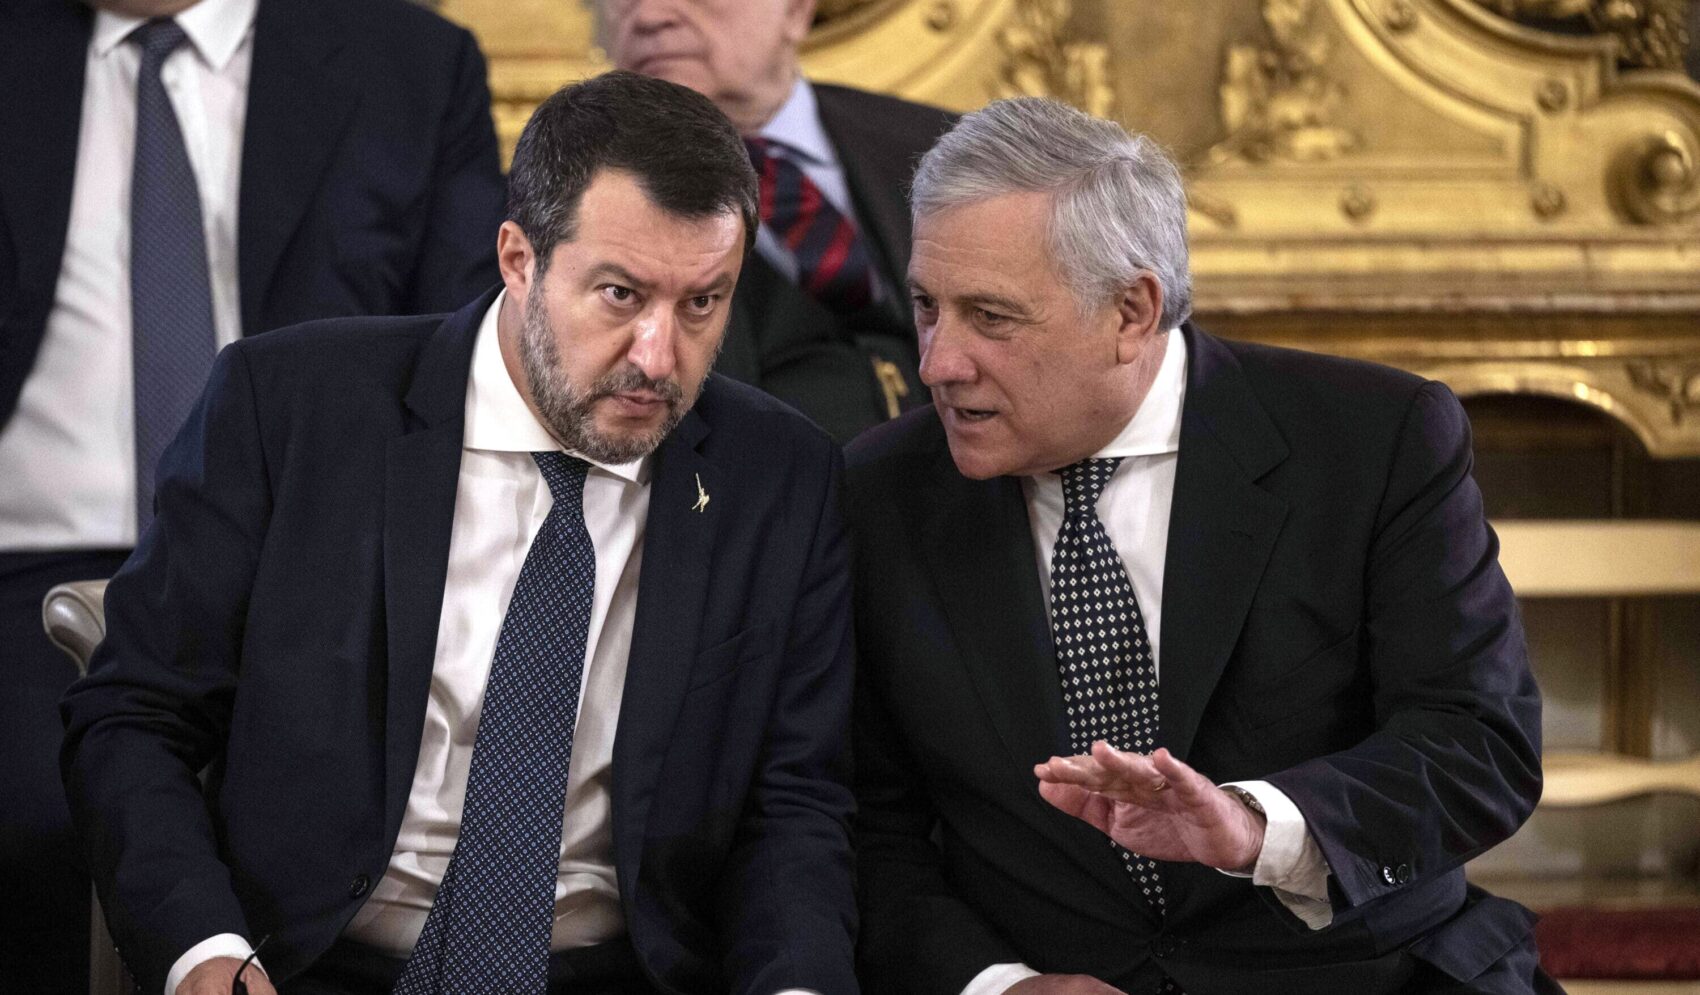 Le sparate sulla Salis stanno complicando il caso, Tajani zittisce Salvini. Ilaria non potrebbe insegnare perché indagata ma sui guai giudiziari di chi è al governo la Lega tace